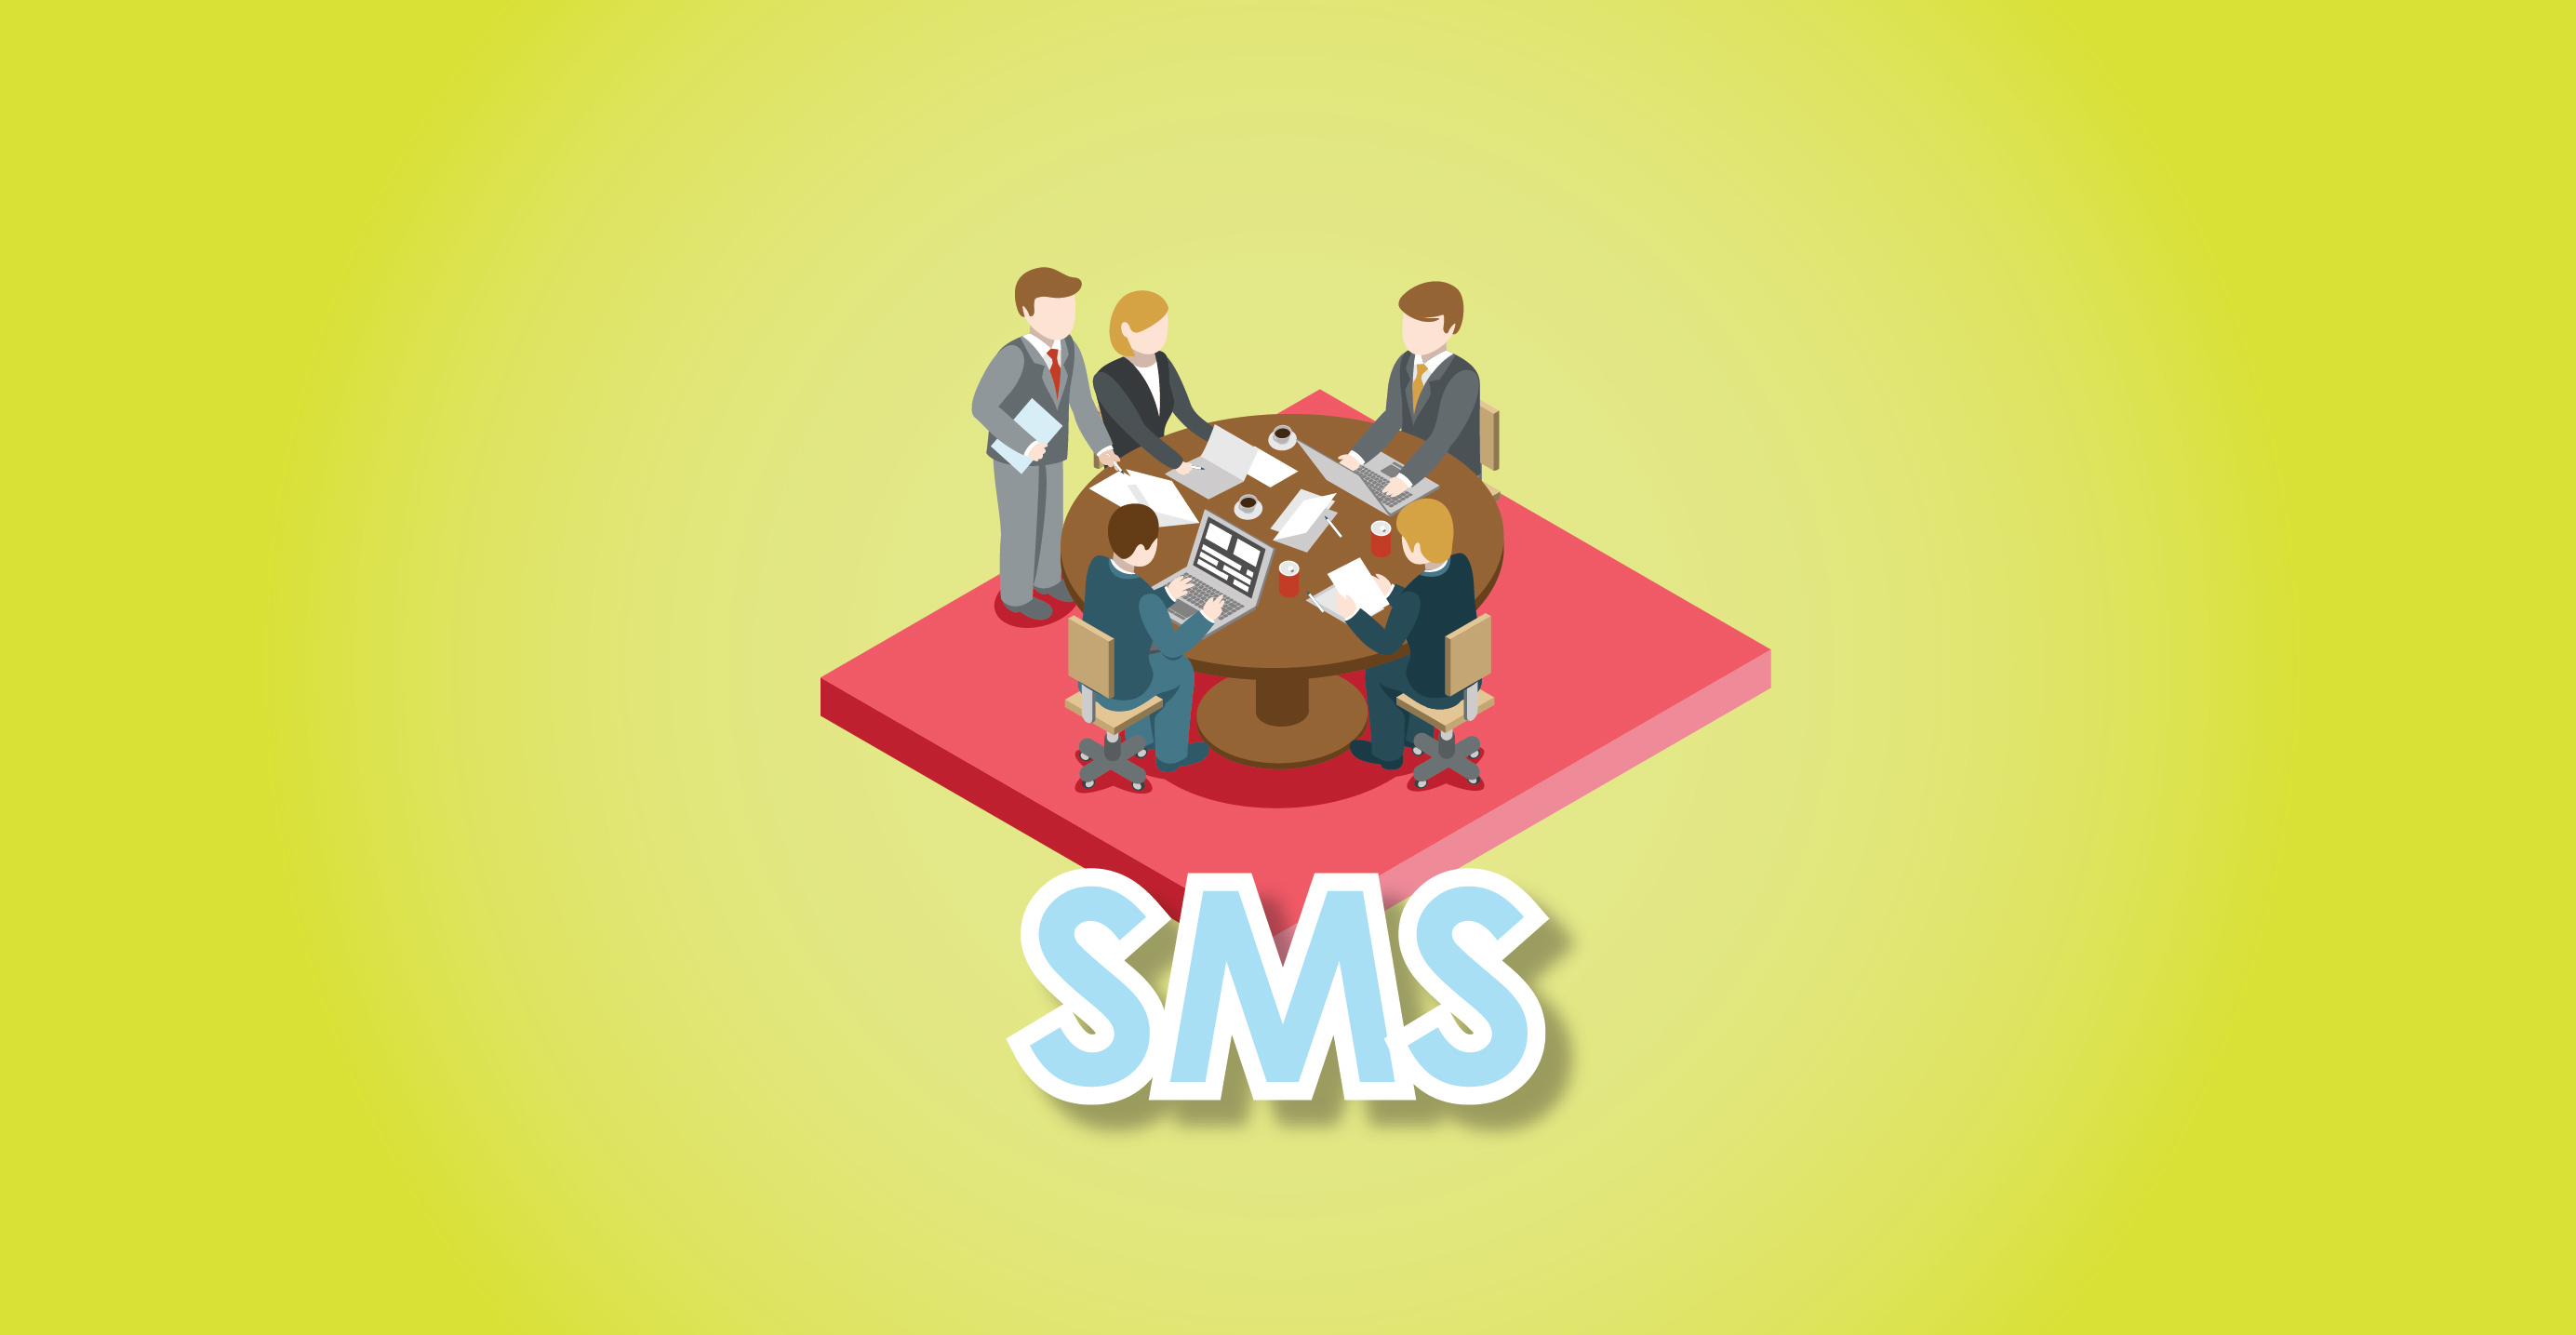 SMS เครื่องมือสื่อสารสำหรับทุกหน่วยงานในบริษัท